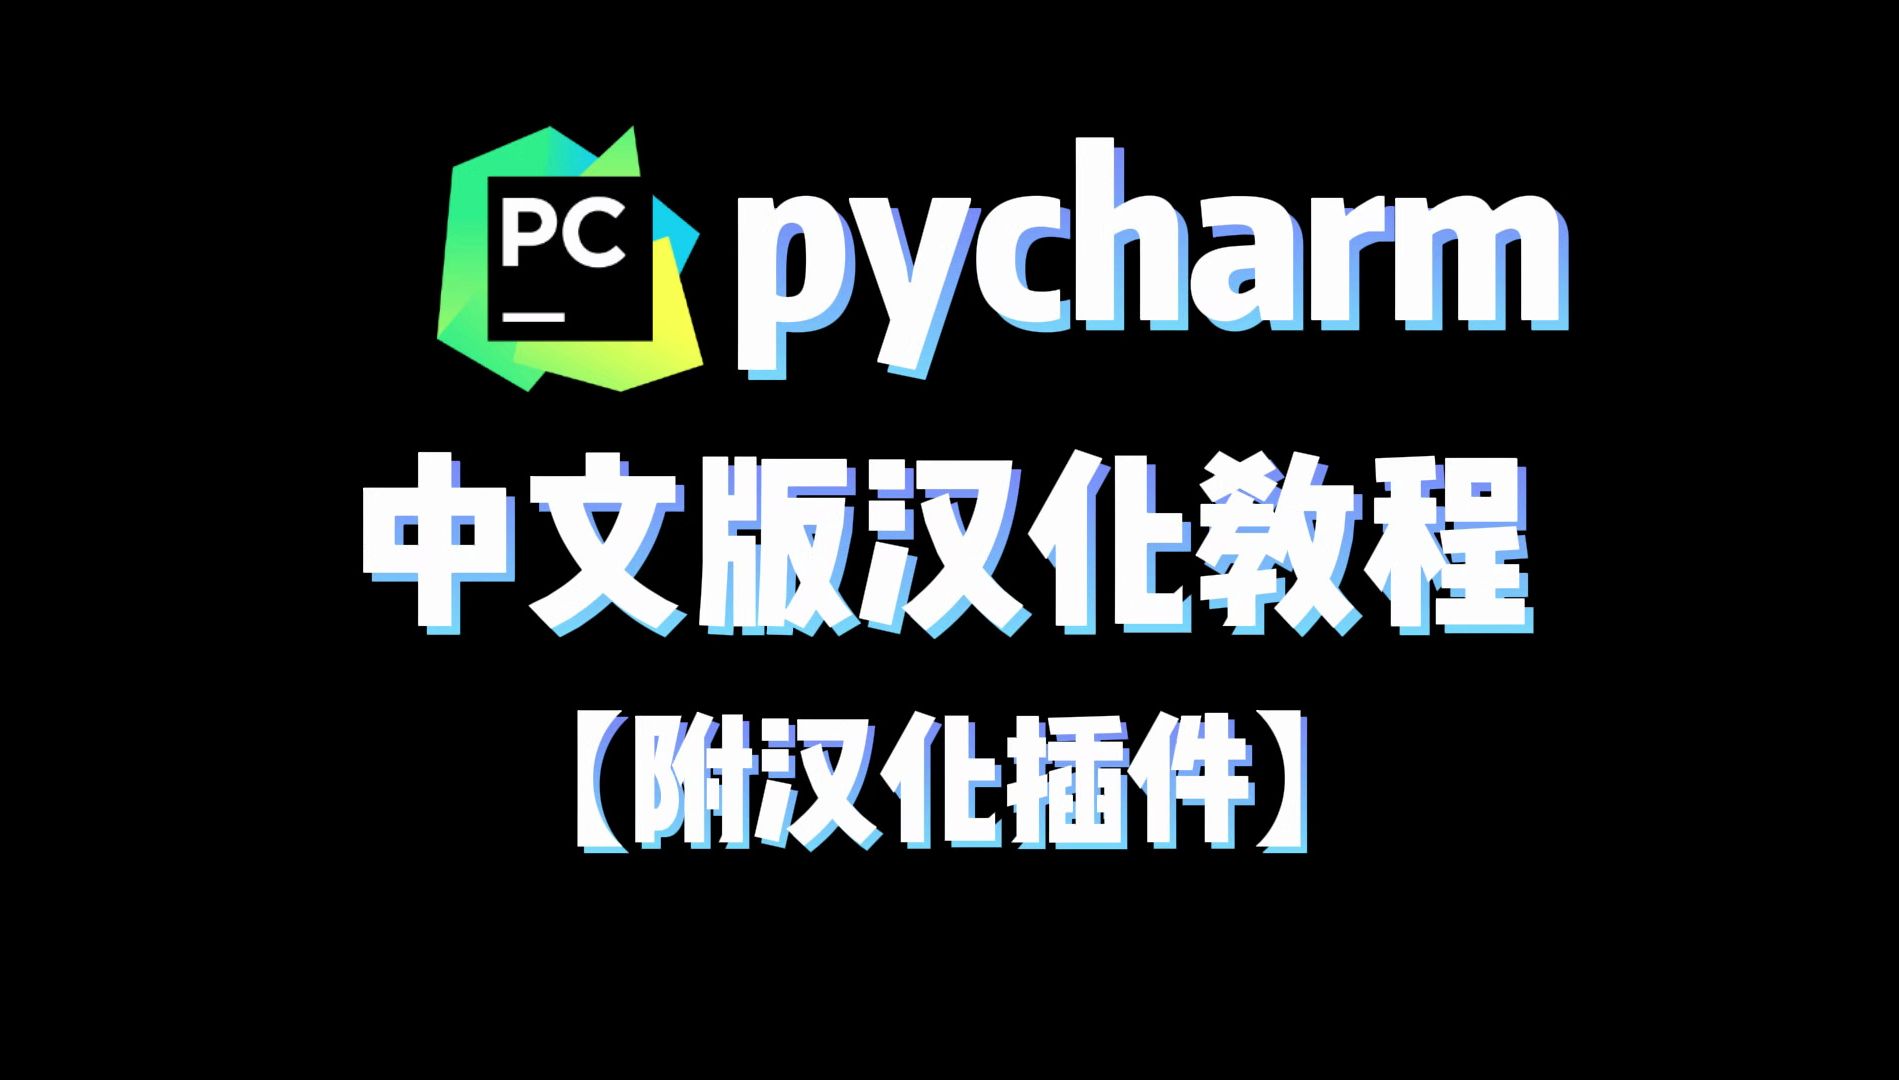 pycharm汉化教程，英文转中文，超详细教程【附安装包+插件】一分钟掌握，再也不担心看不懂英文啦